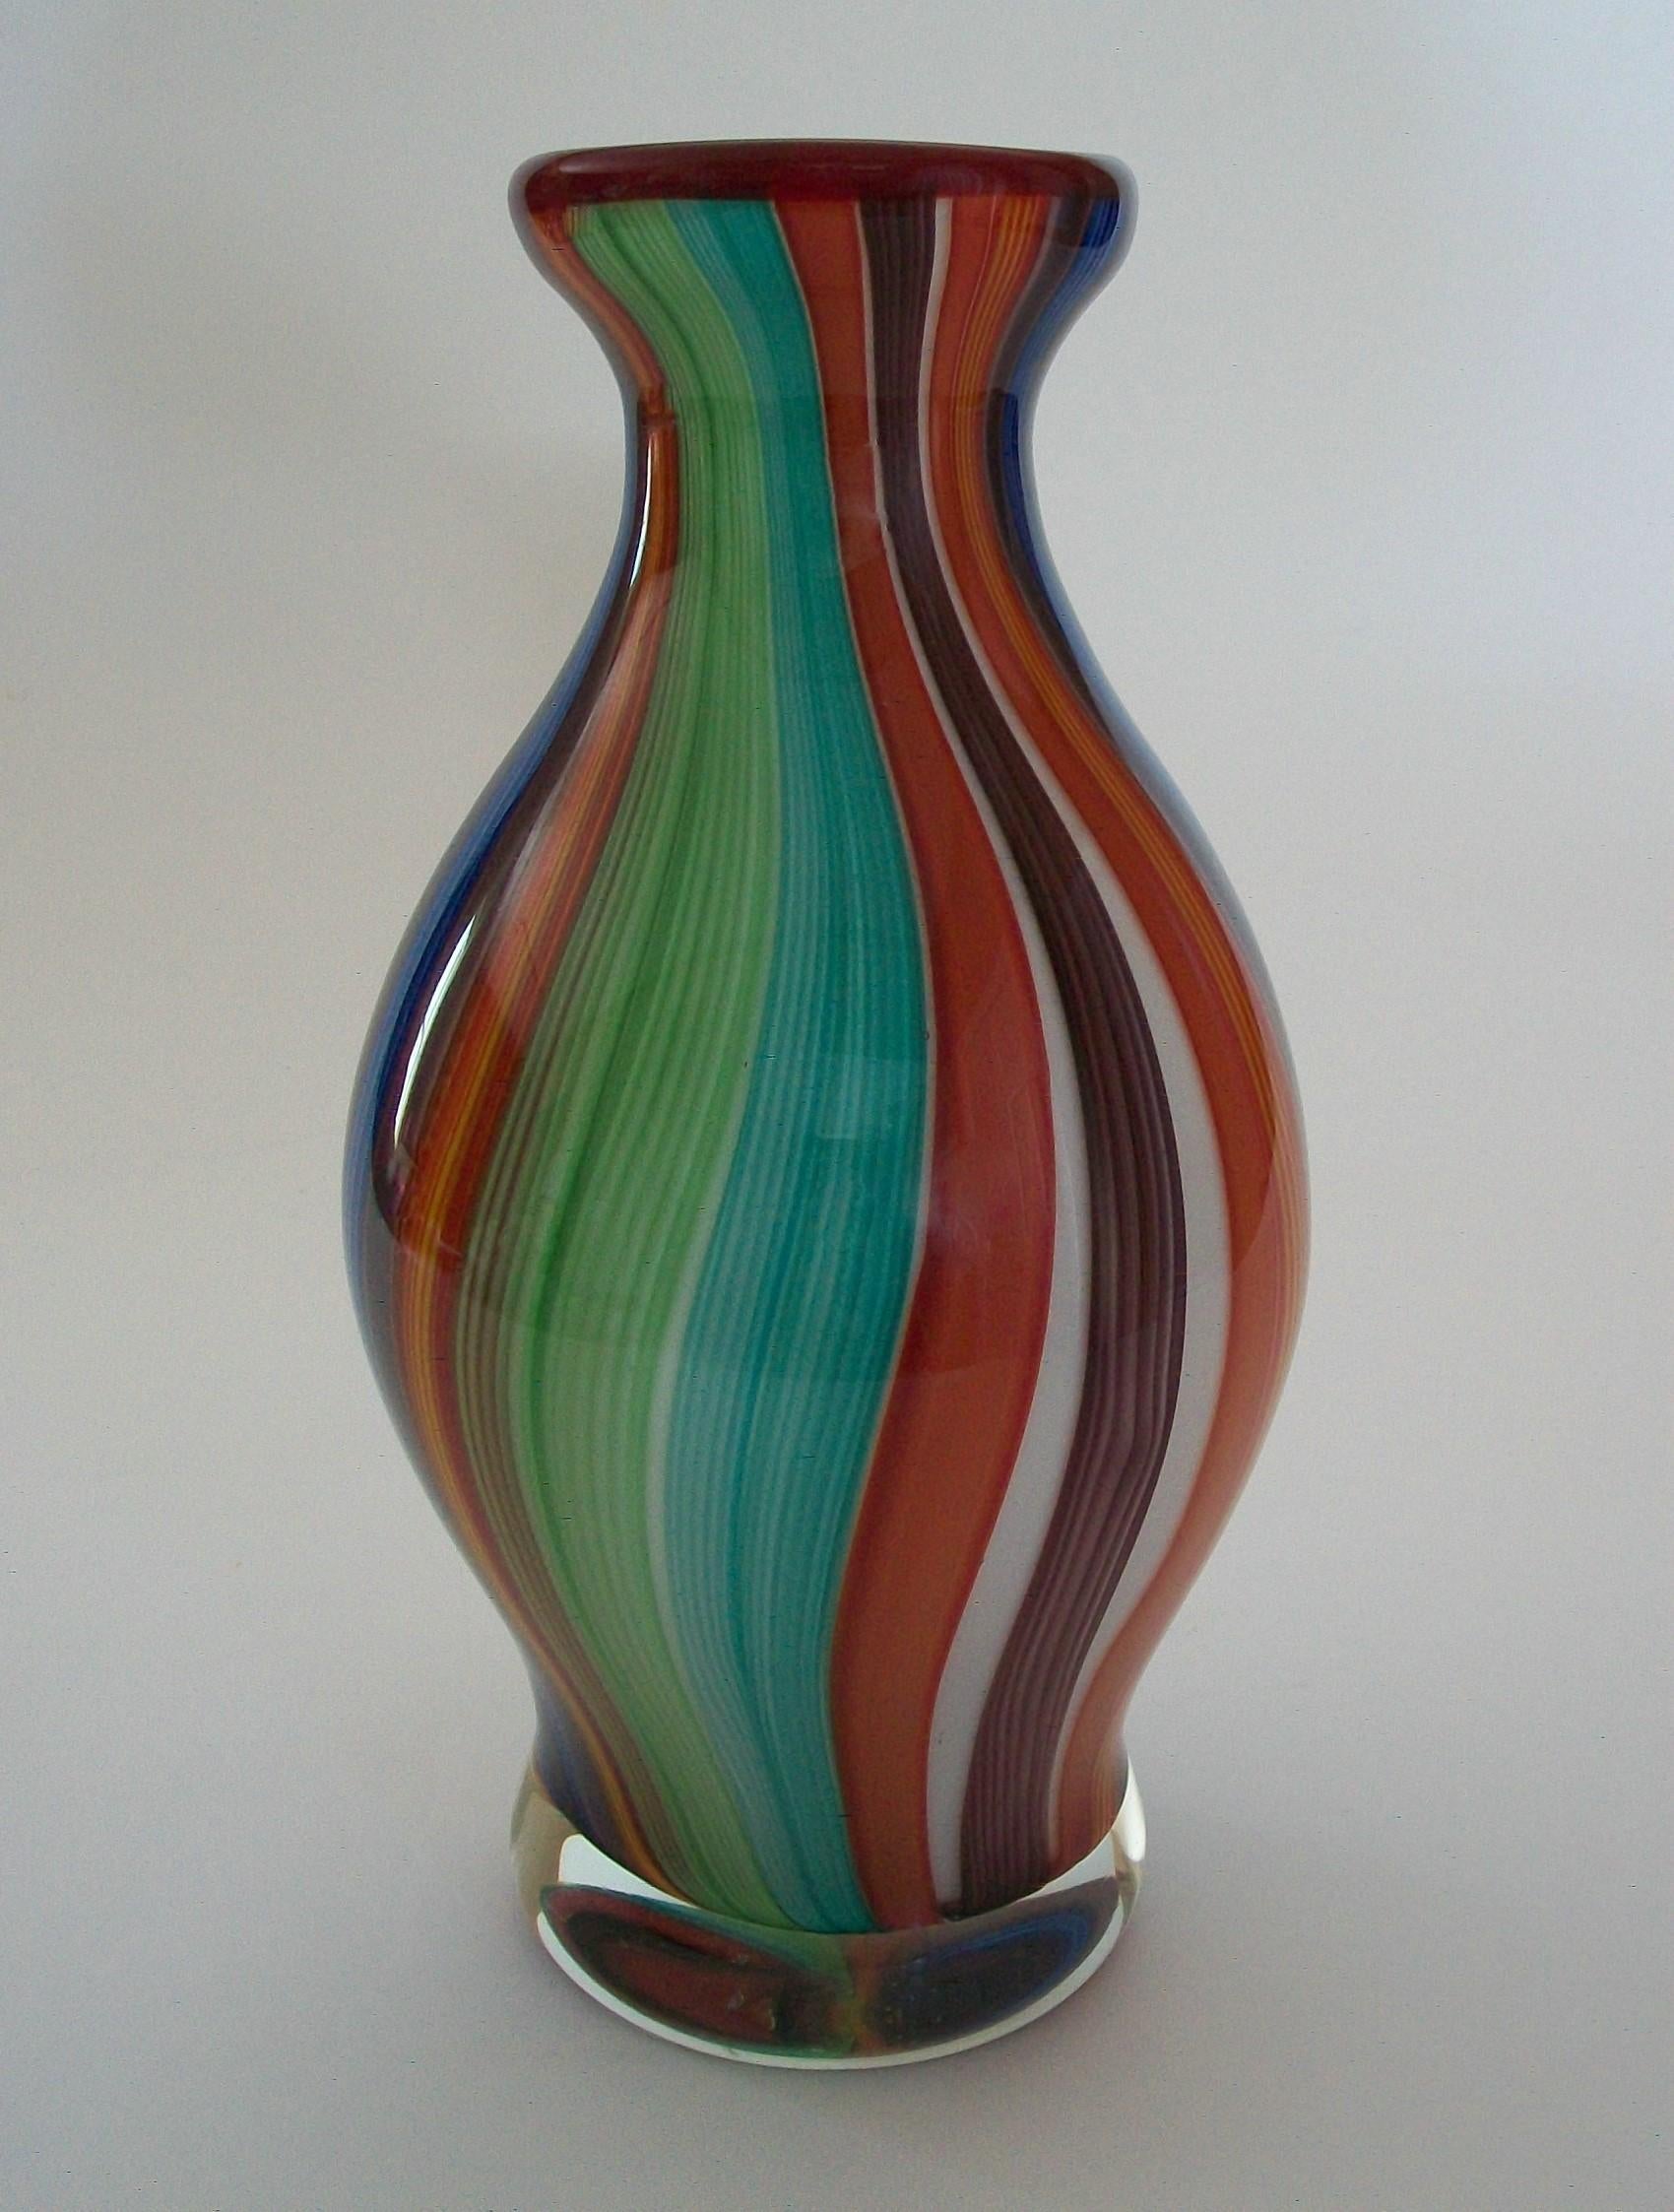 Grand vase vintage en verre de Murano multicolore - intérieur en verre blanc avec bord rouge - extérieur et base en verre transparent - non signé - Italie - fin du 20e siècle.

Excellent état vintage - pas de perte - pas de dommage - pas de